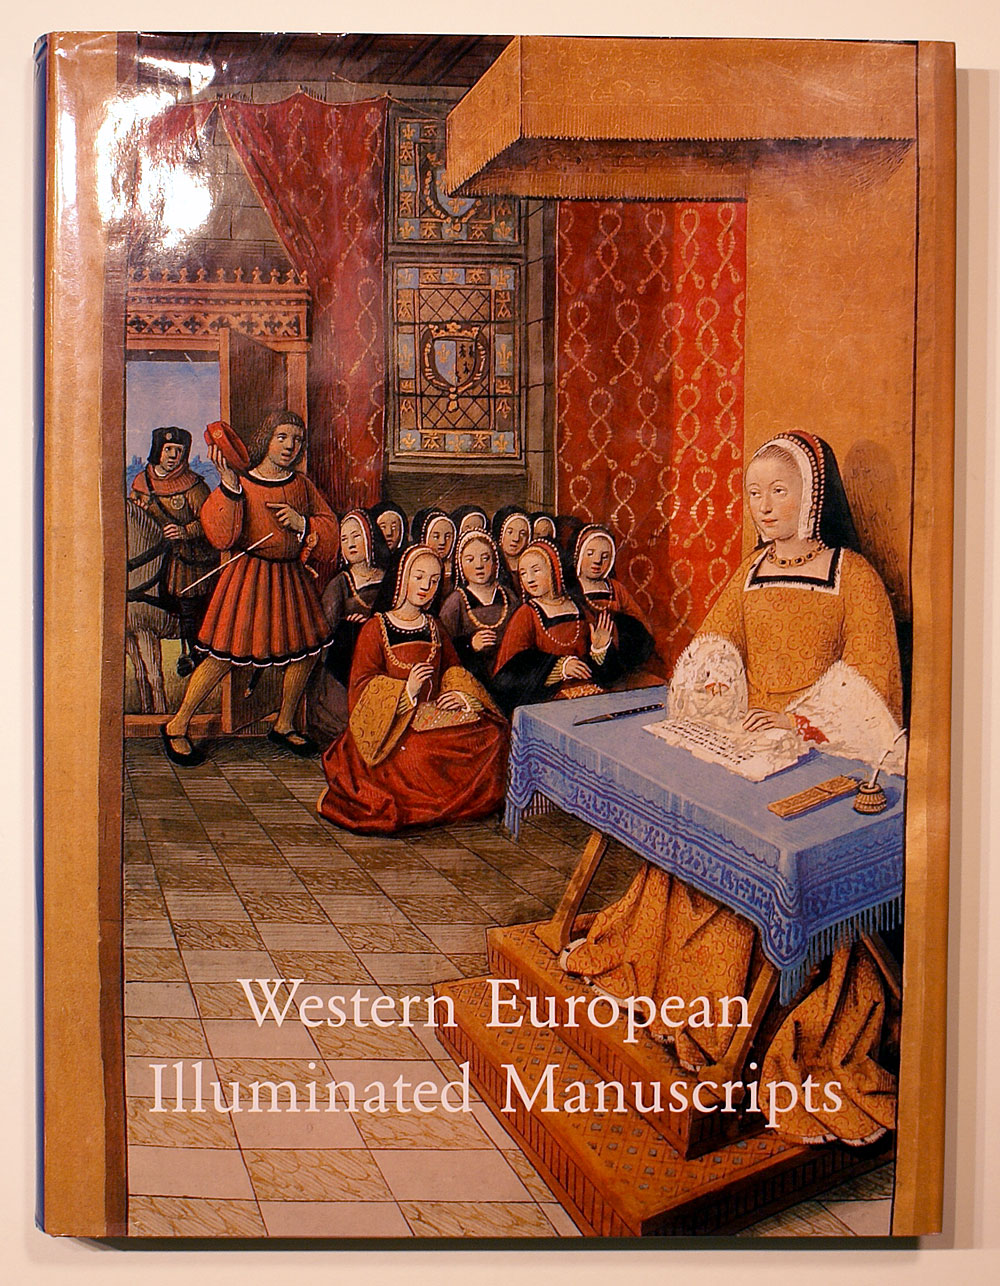 WESTERN EUROPEAN ILLUMINATED MANUSCRIPTS 8-16th CENTURY